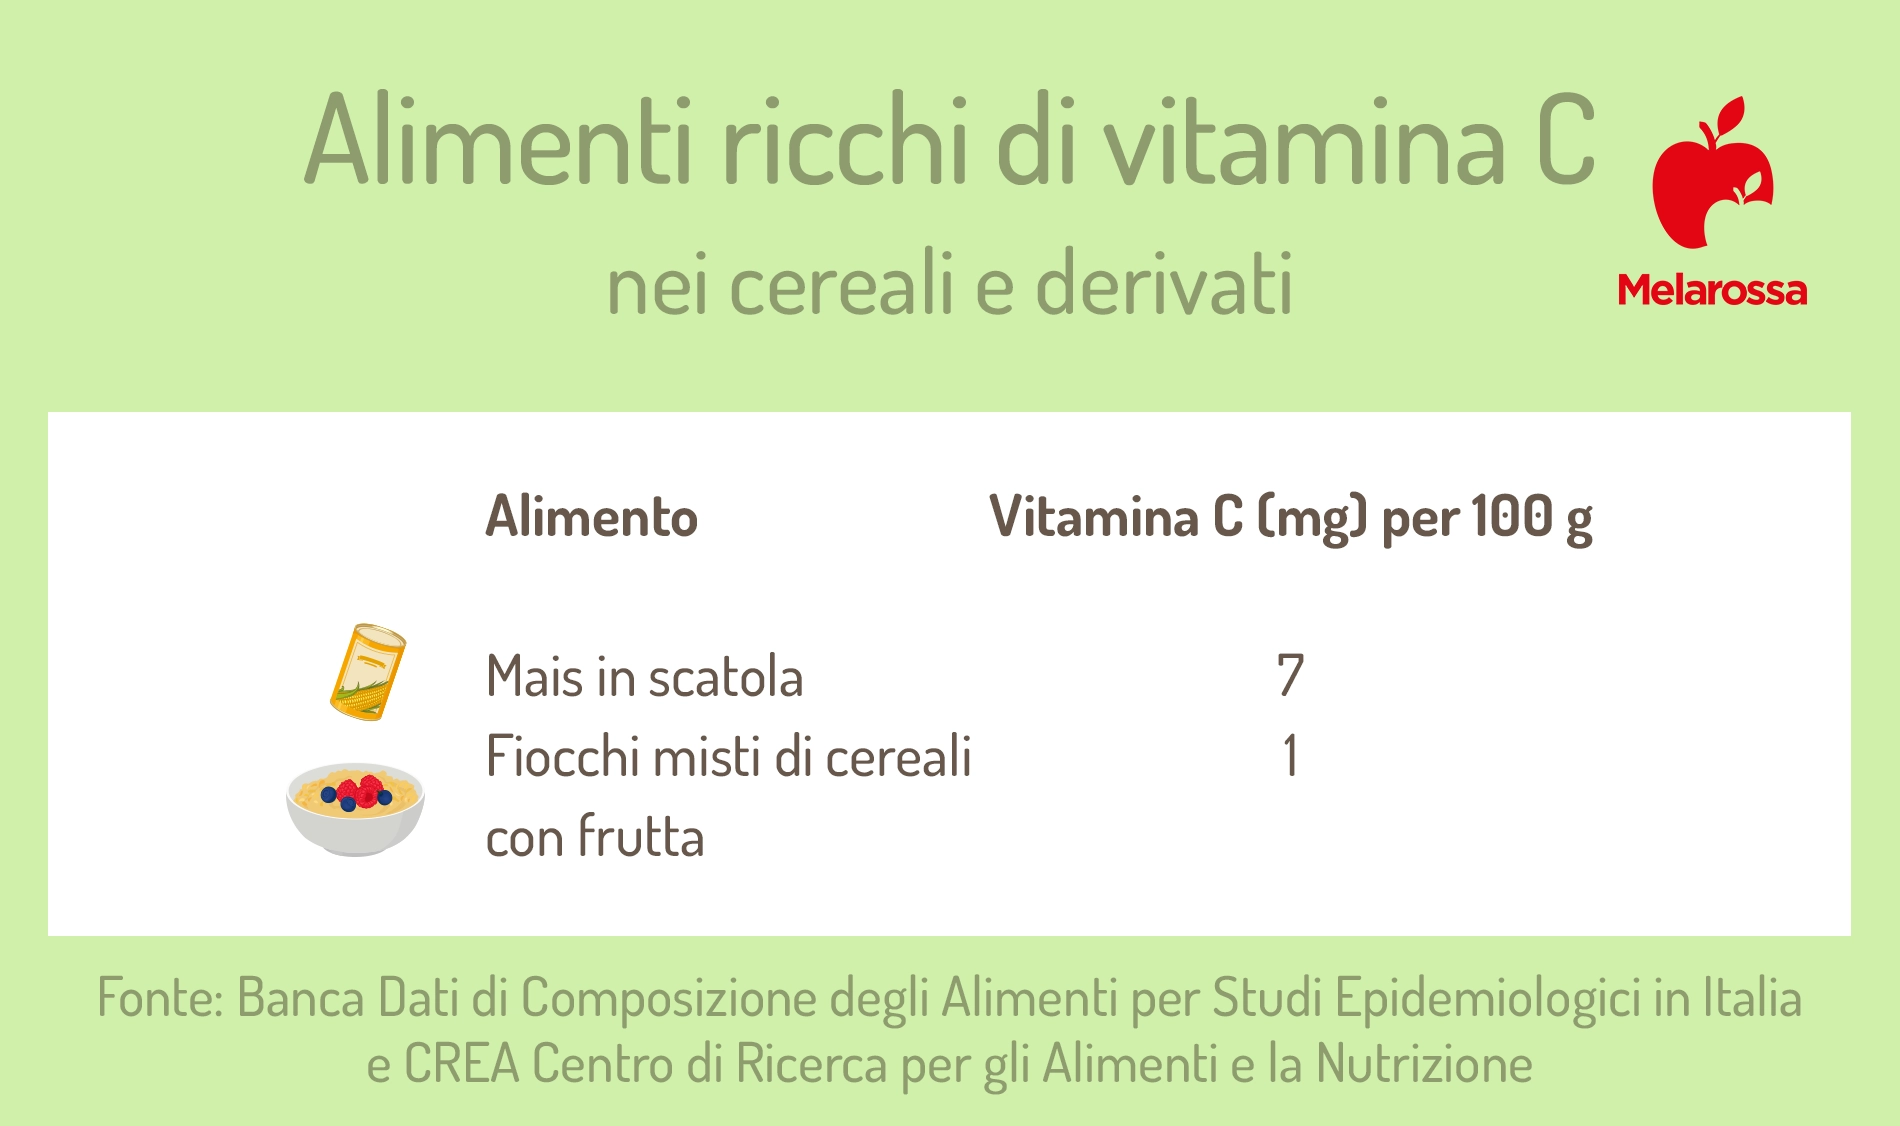 classifica degli alimenti ricchi di vitamina C: gruppo cereali 